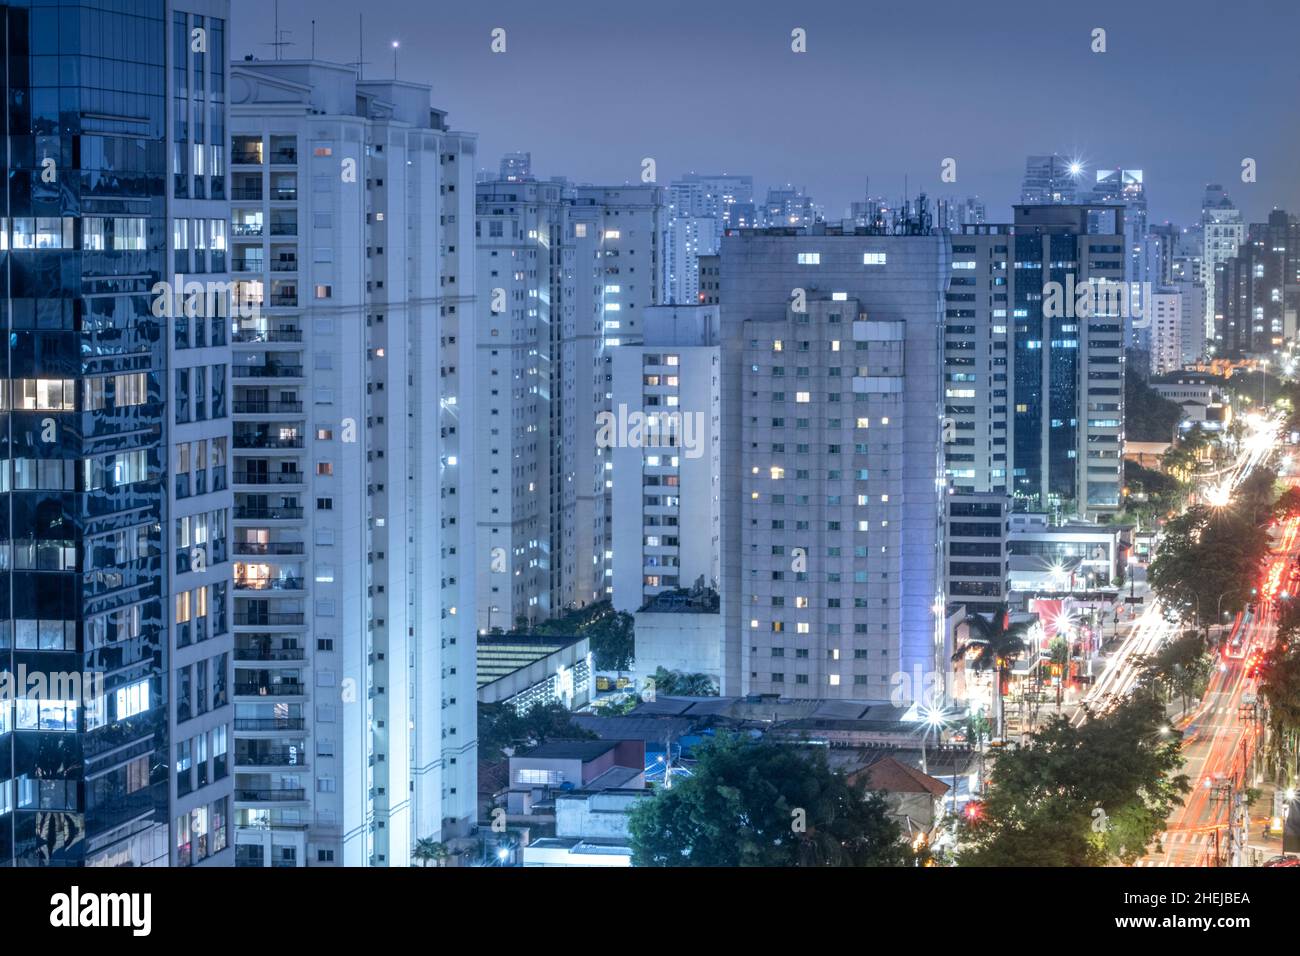 San Paolo, Brasile, quartiere di Moema, Avenida Ibirapuera. Autostrada urbana con traffico, grattacieli, edifici per uffici e condomini residenziali Foto Stock